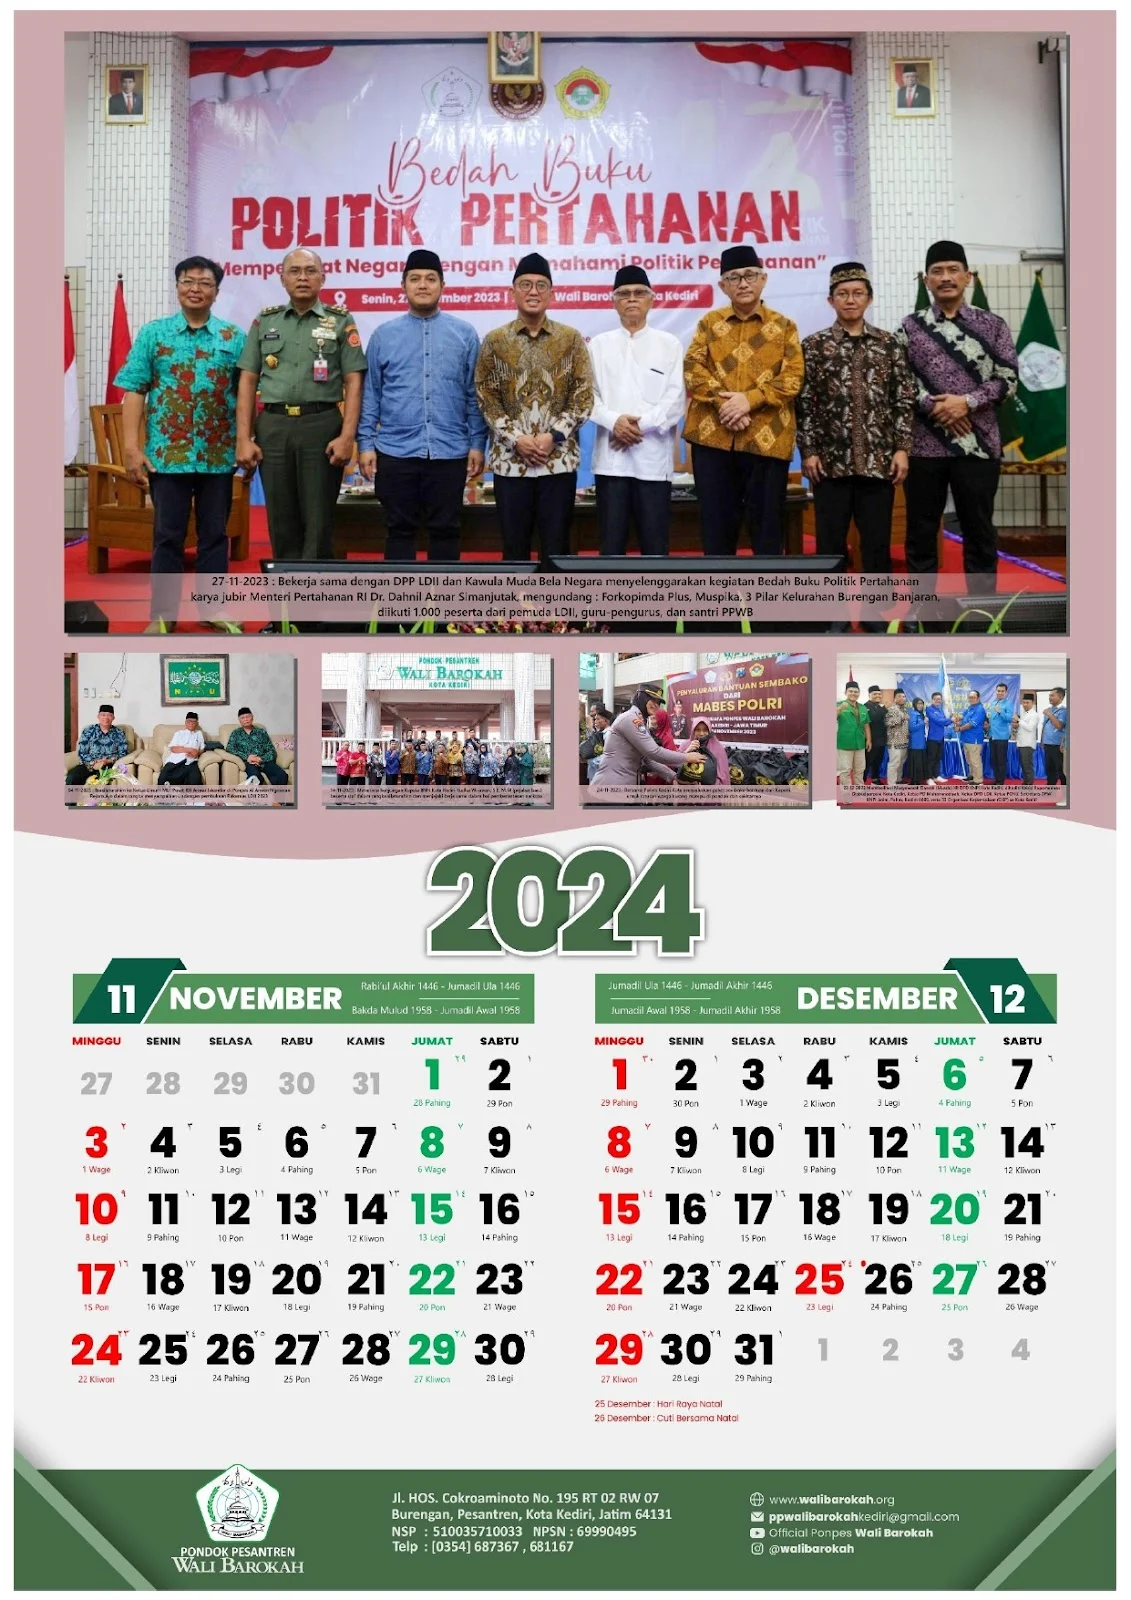 Kalender 2024 Pondok Pesantren Wali Barokah Kediri